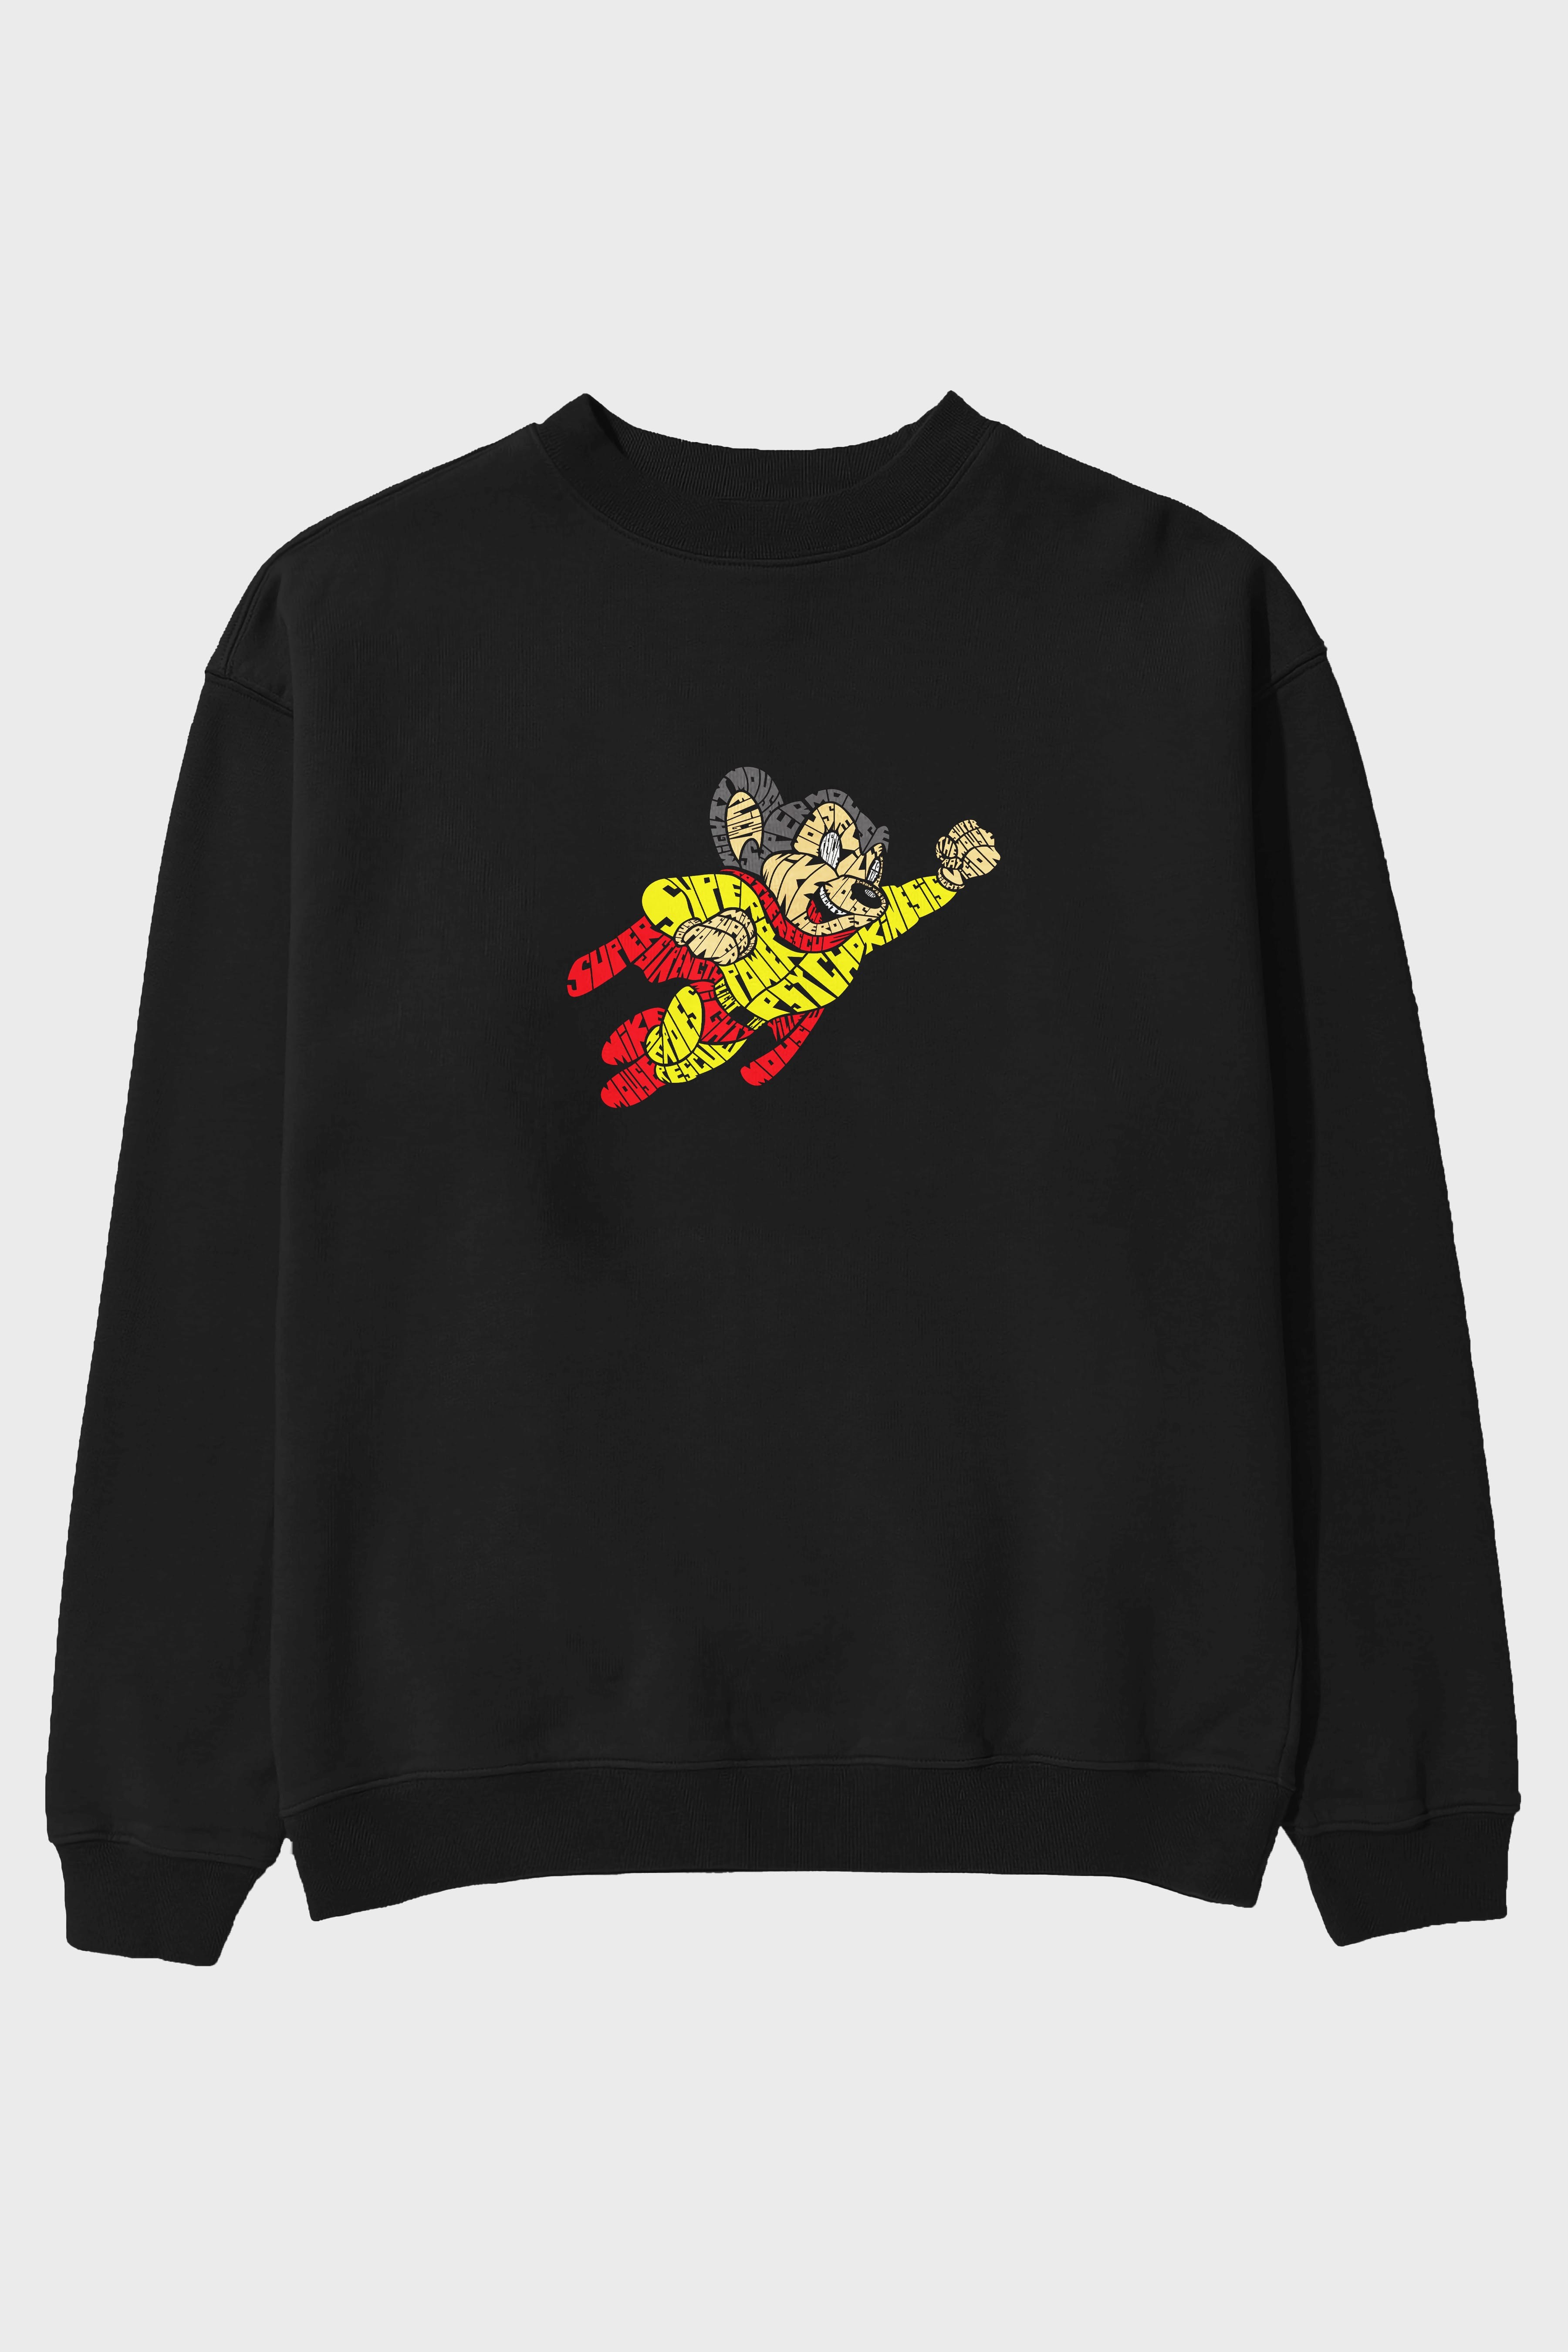 Mighty Mouse Ön Baskılı Oversize Sweatshirt Erkek Kadın Unisex